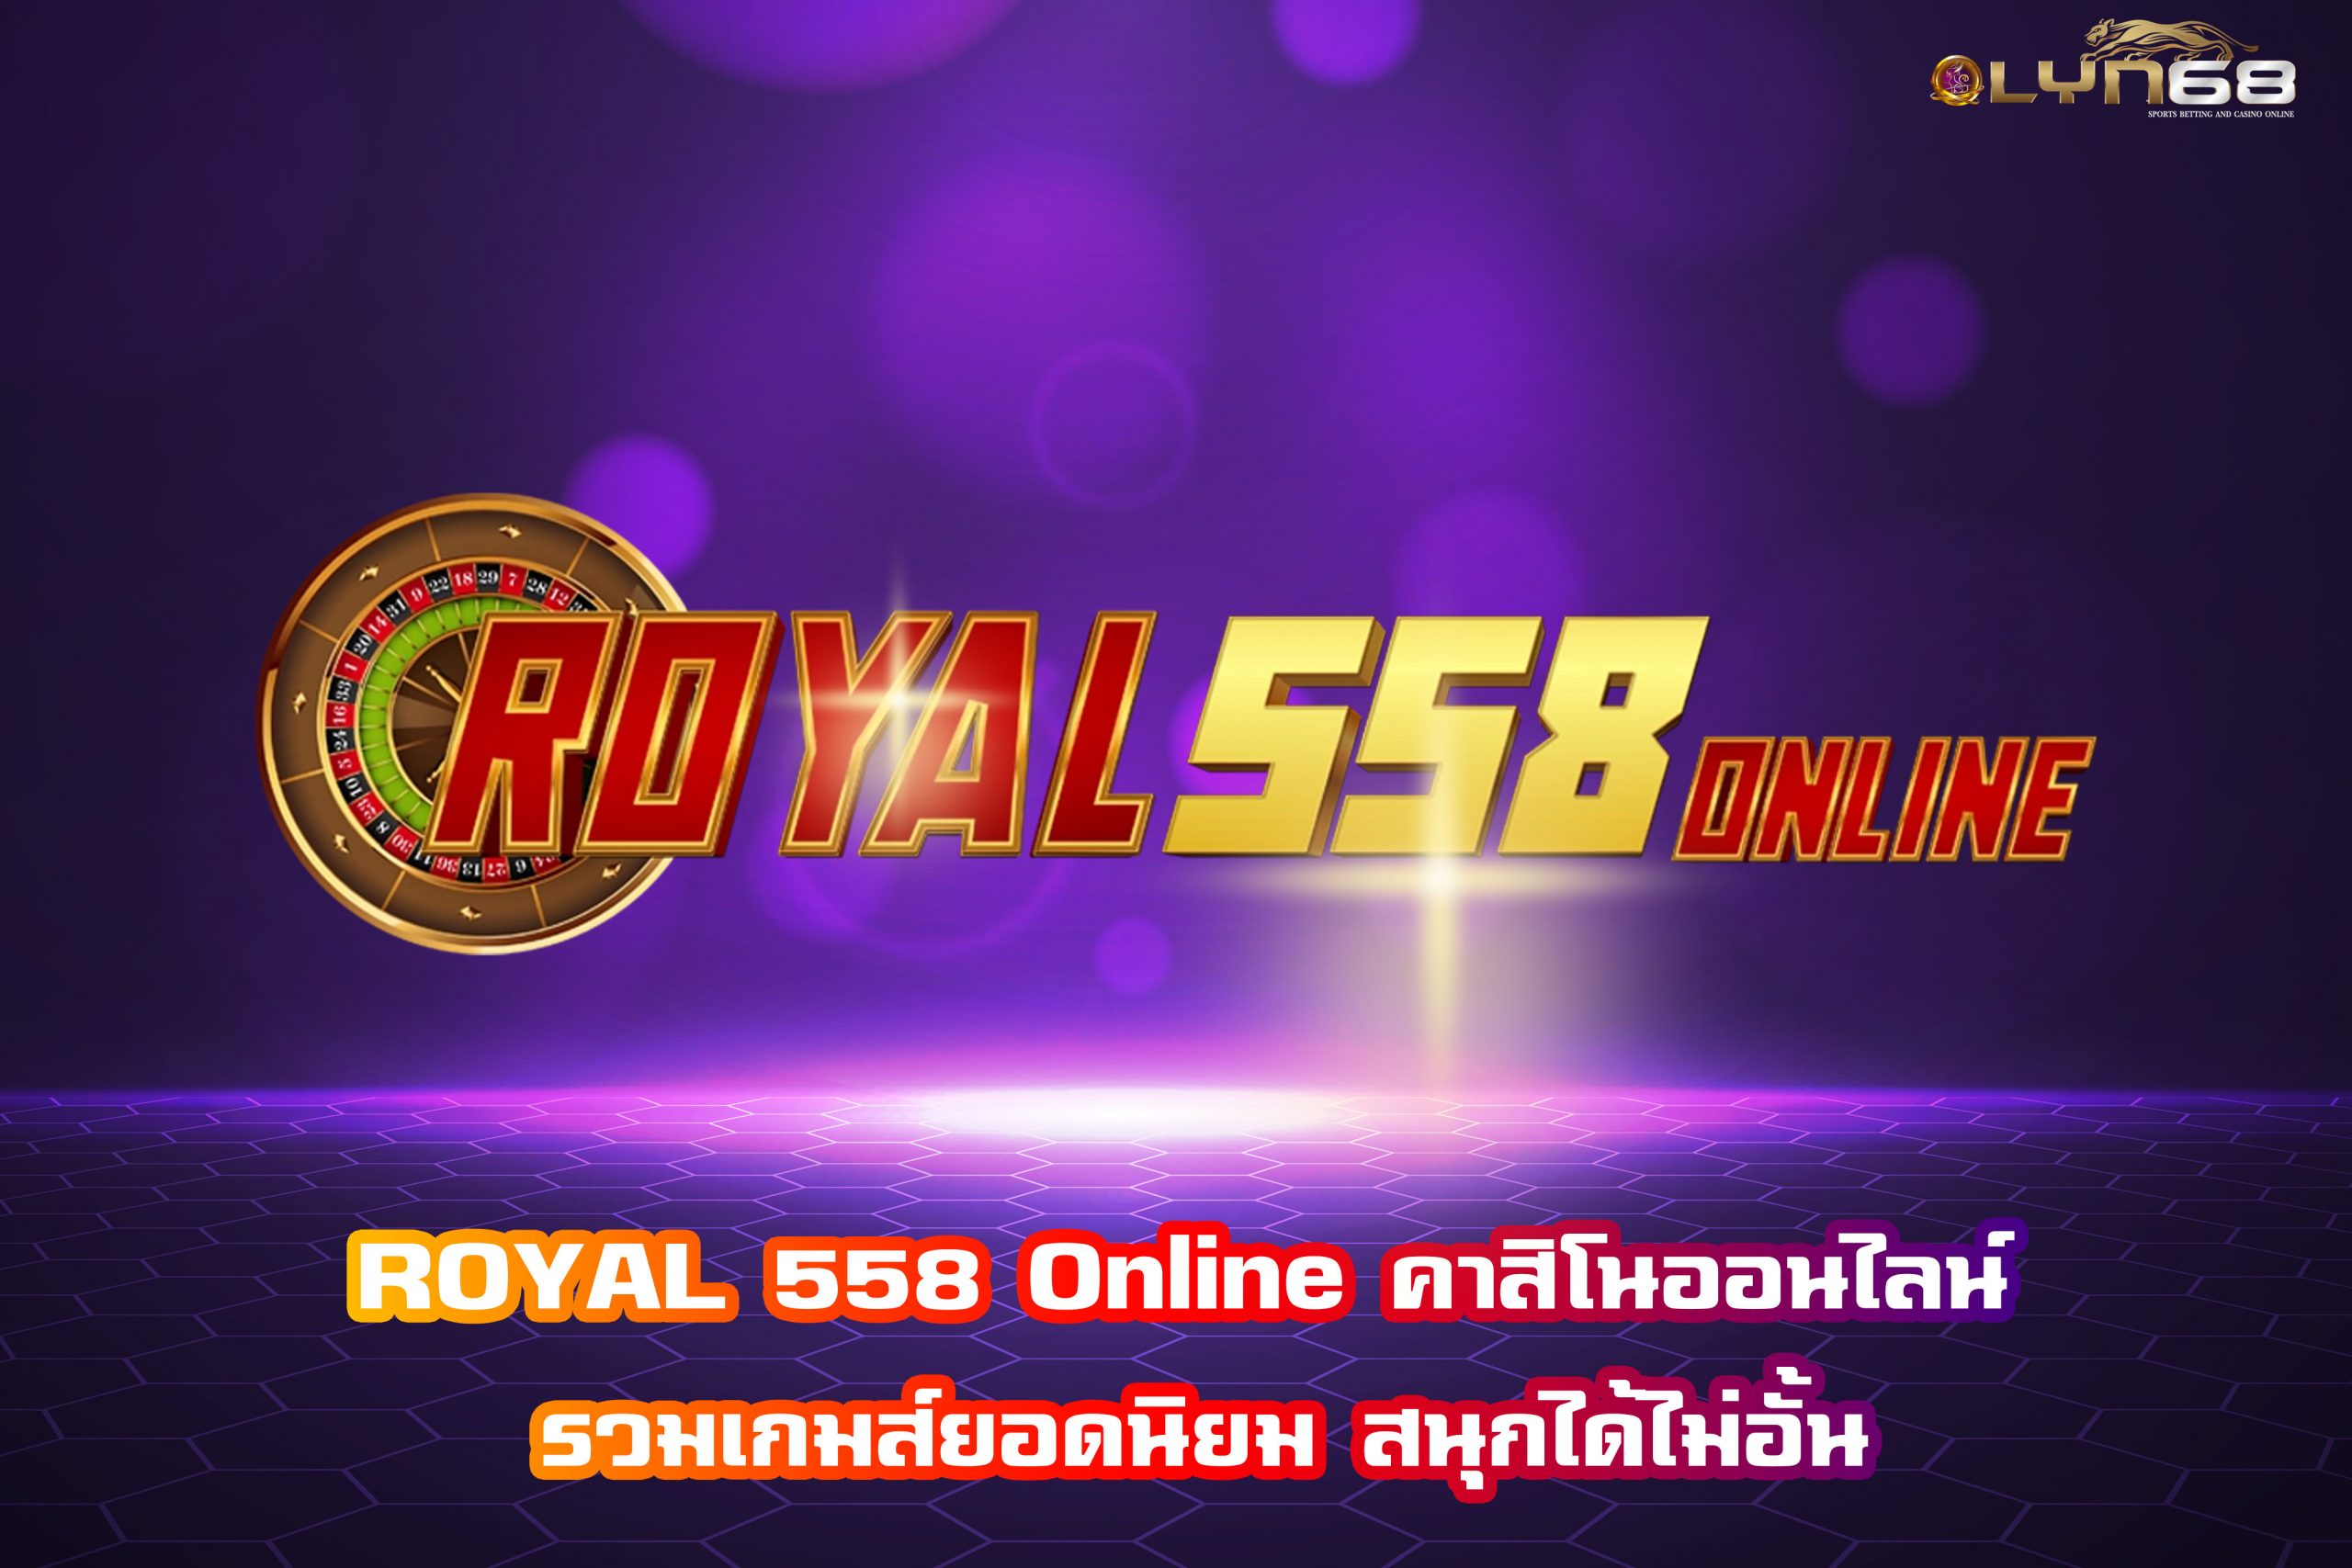 ROYAL 558 Online คาสิโนออนไลน์ รวมเกมส์ยอดนิยม สนุกได้ไม่อั้น